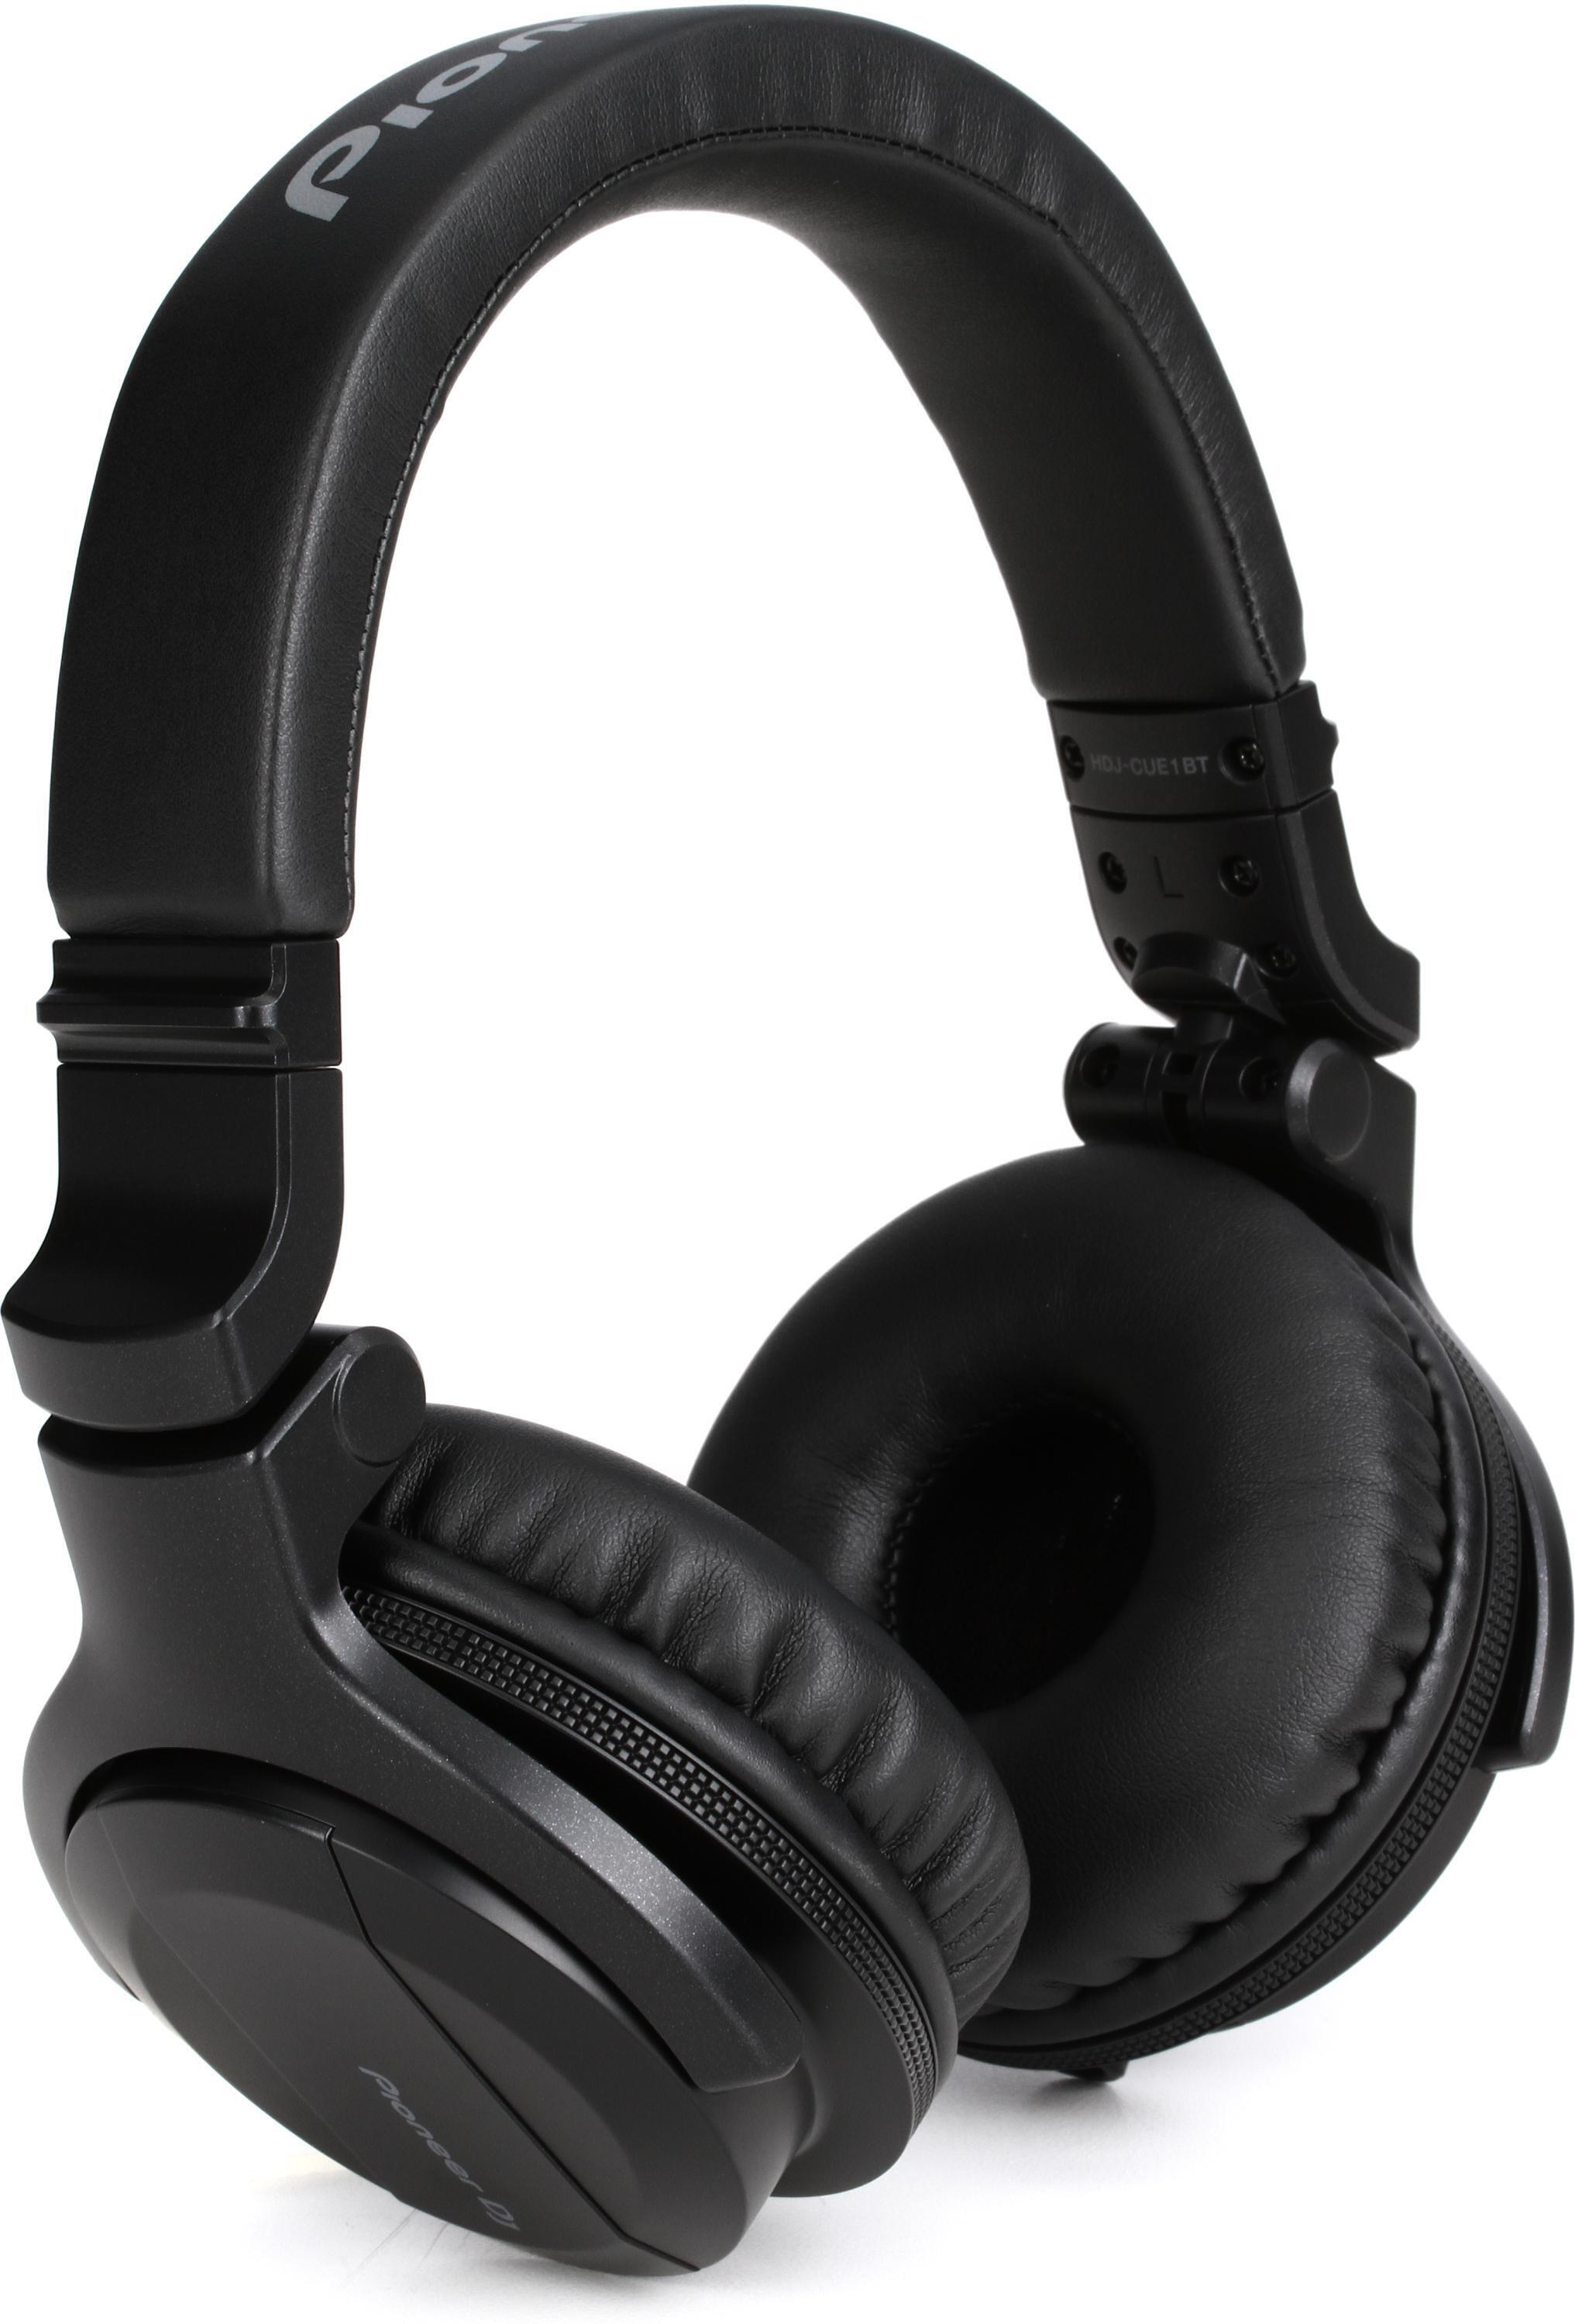 Pioneer DJ HDJ-CUE1-BT On-Ear Bluetooth DJ Headphones - Black